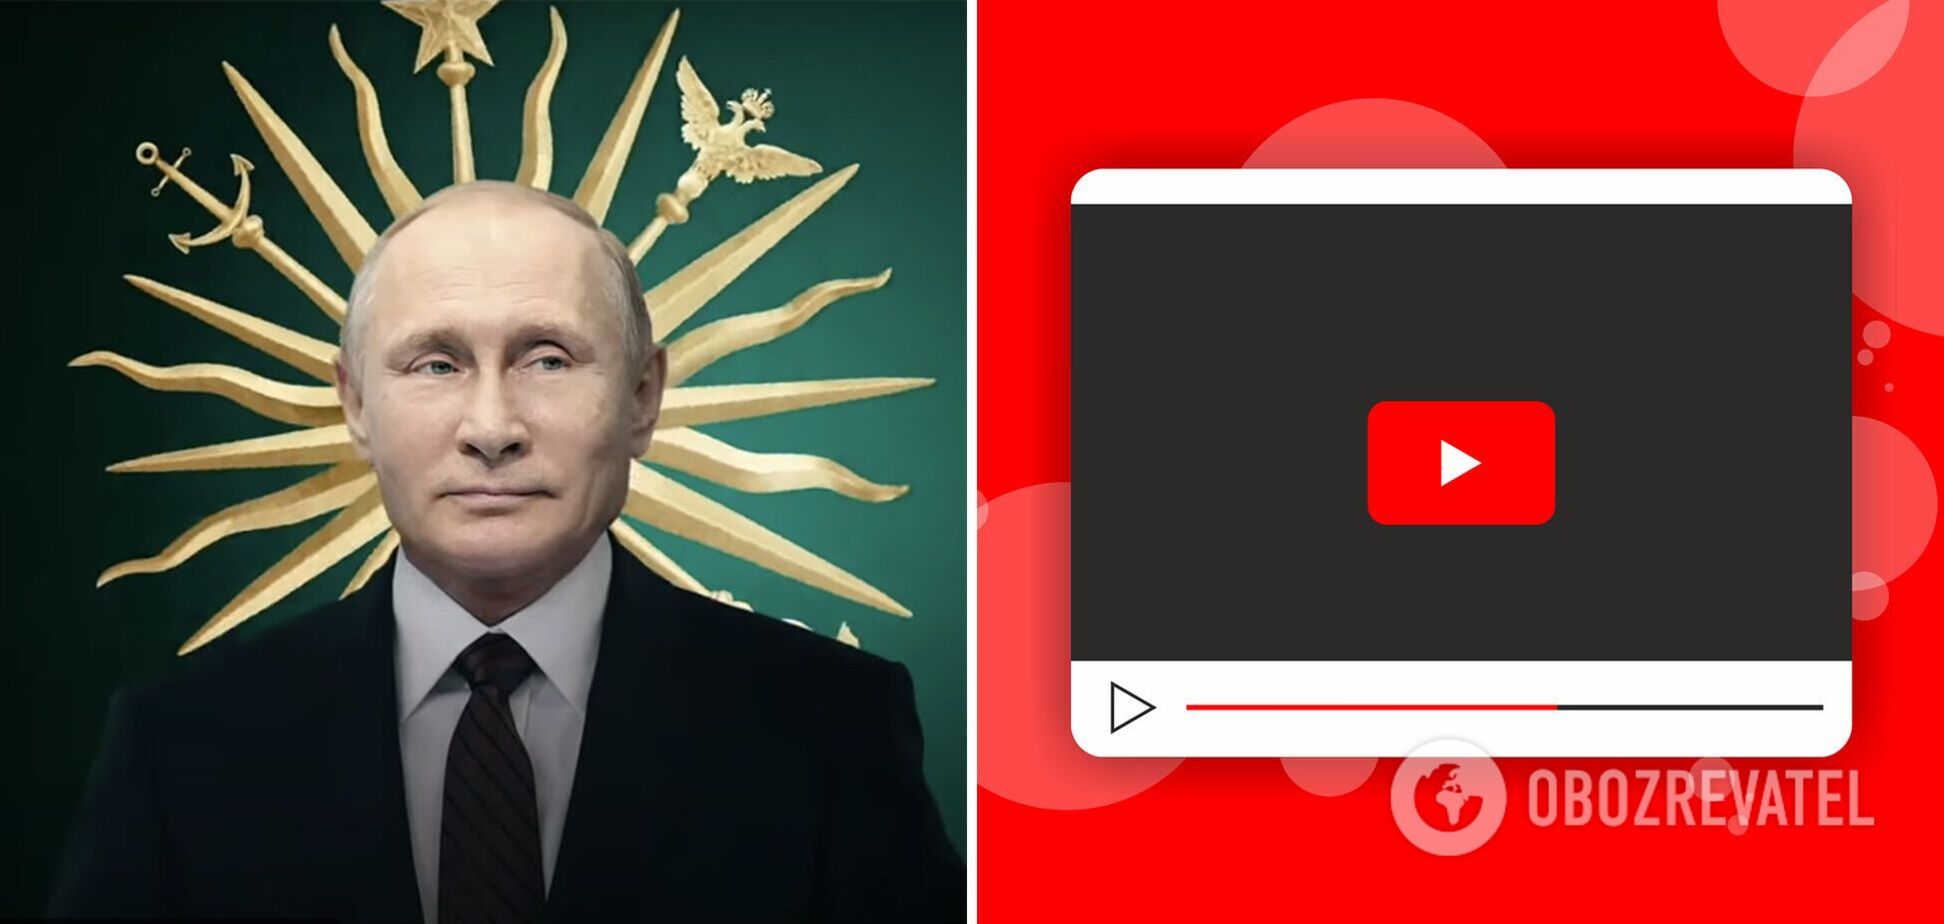 YouTube назвав топ-10 найпопулярніших відео 2021 року, які шукали українці: на першому місці фільм про Путіна